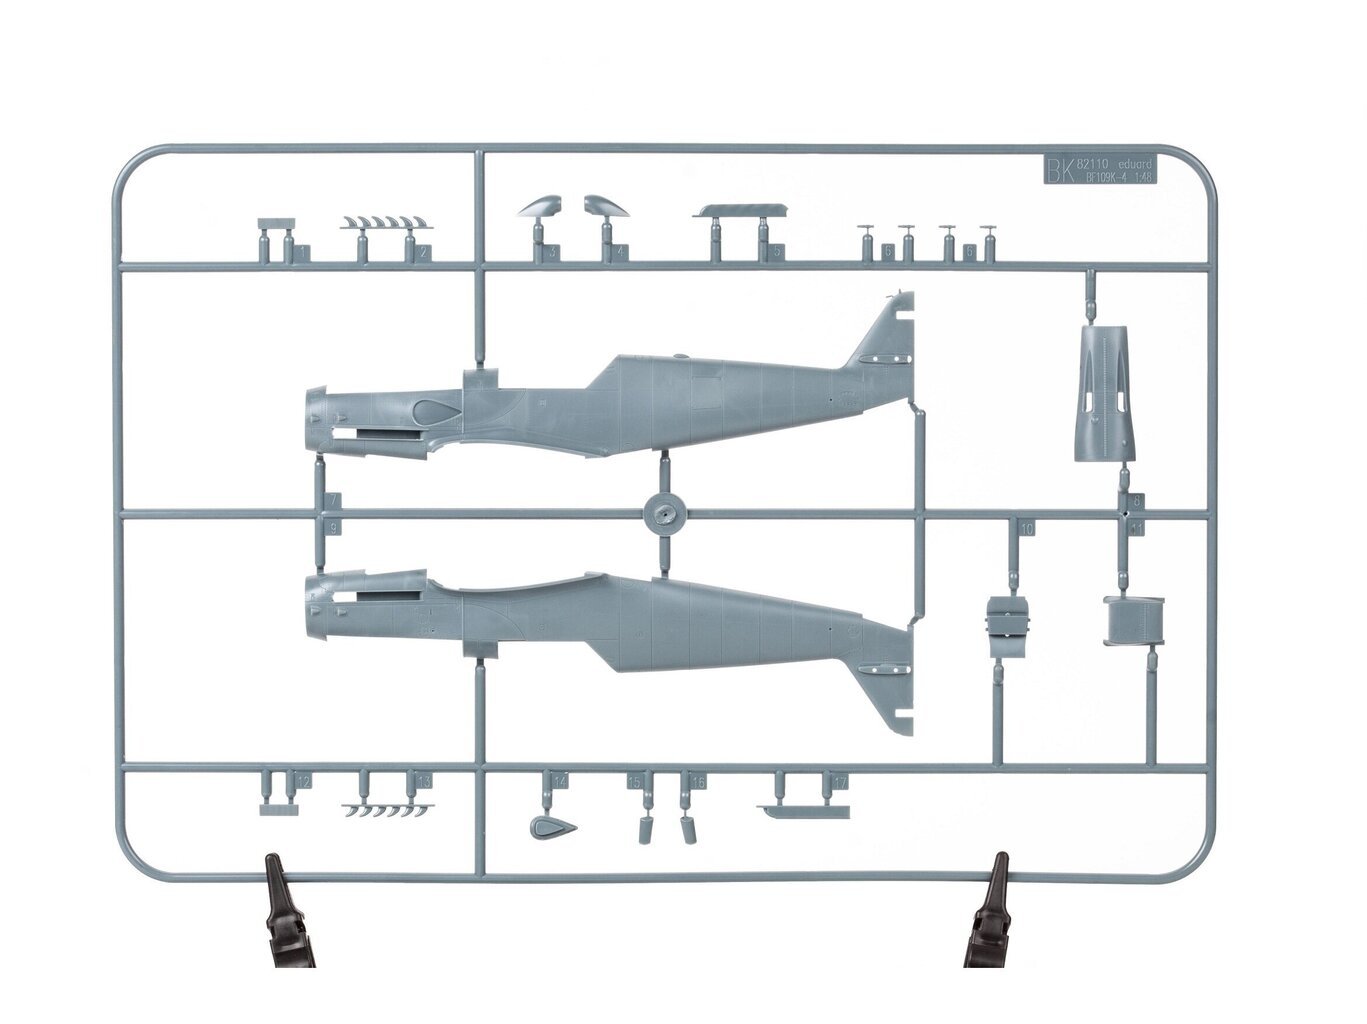 Līmējamais modelis Eduard - Messerschmitt Bf 109K-4 Weekend edition, 1/48, 84197 cena un informācija | Līmējamie modeļi | 220.lv